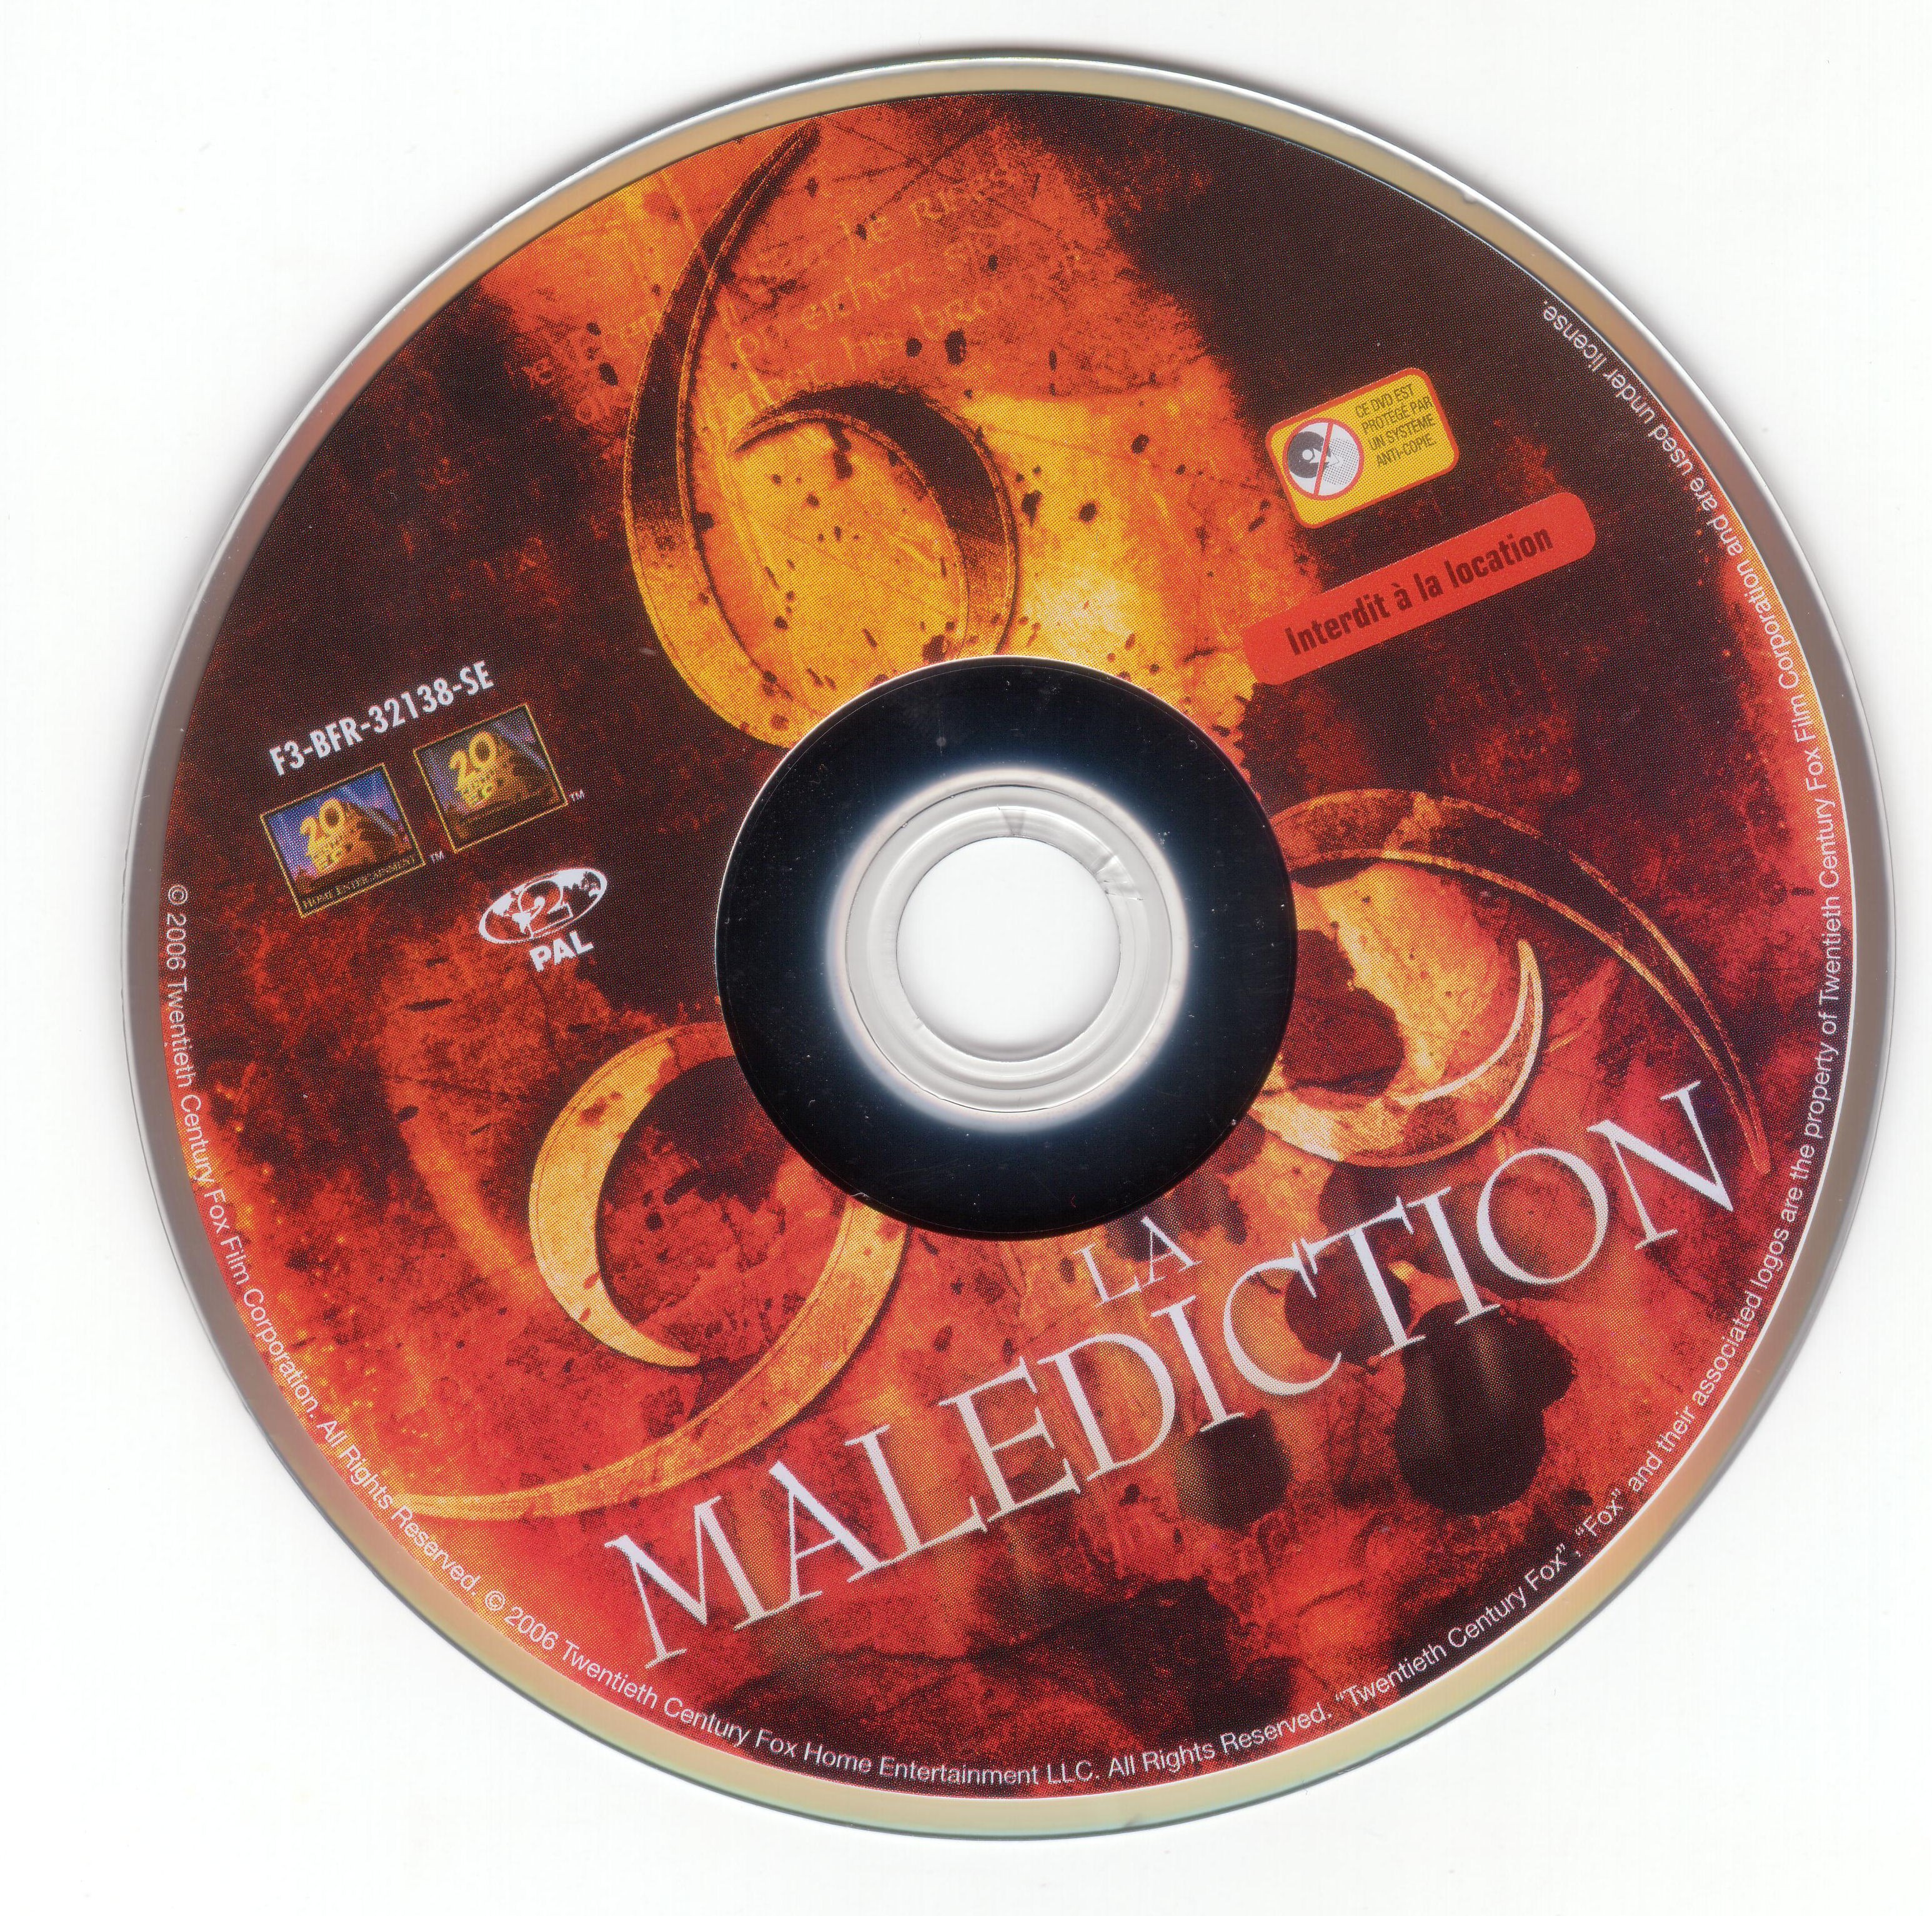 La malediction (2006)